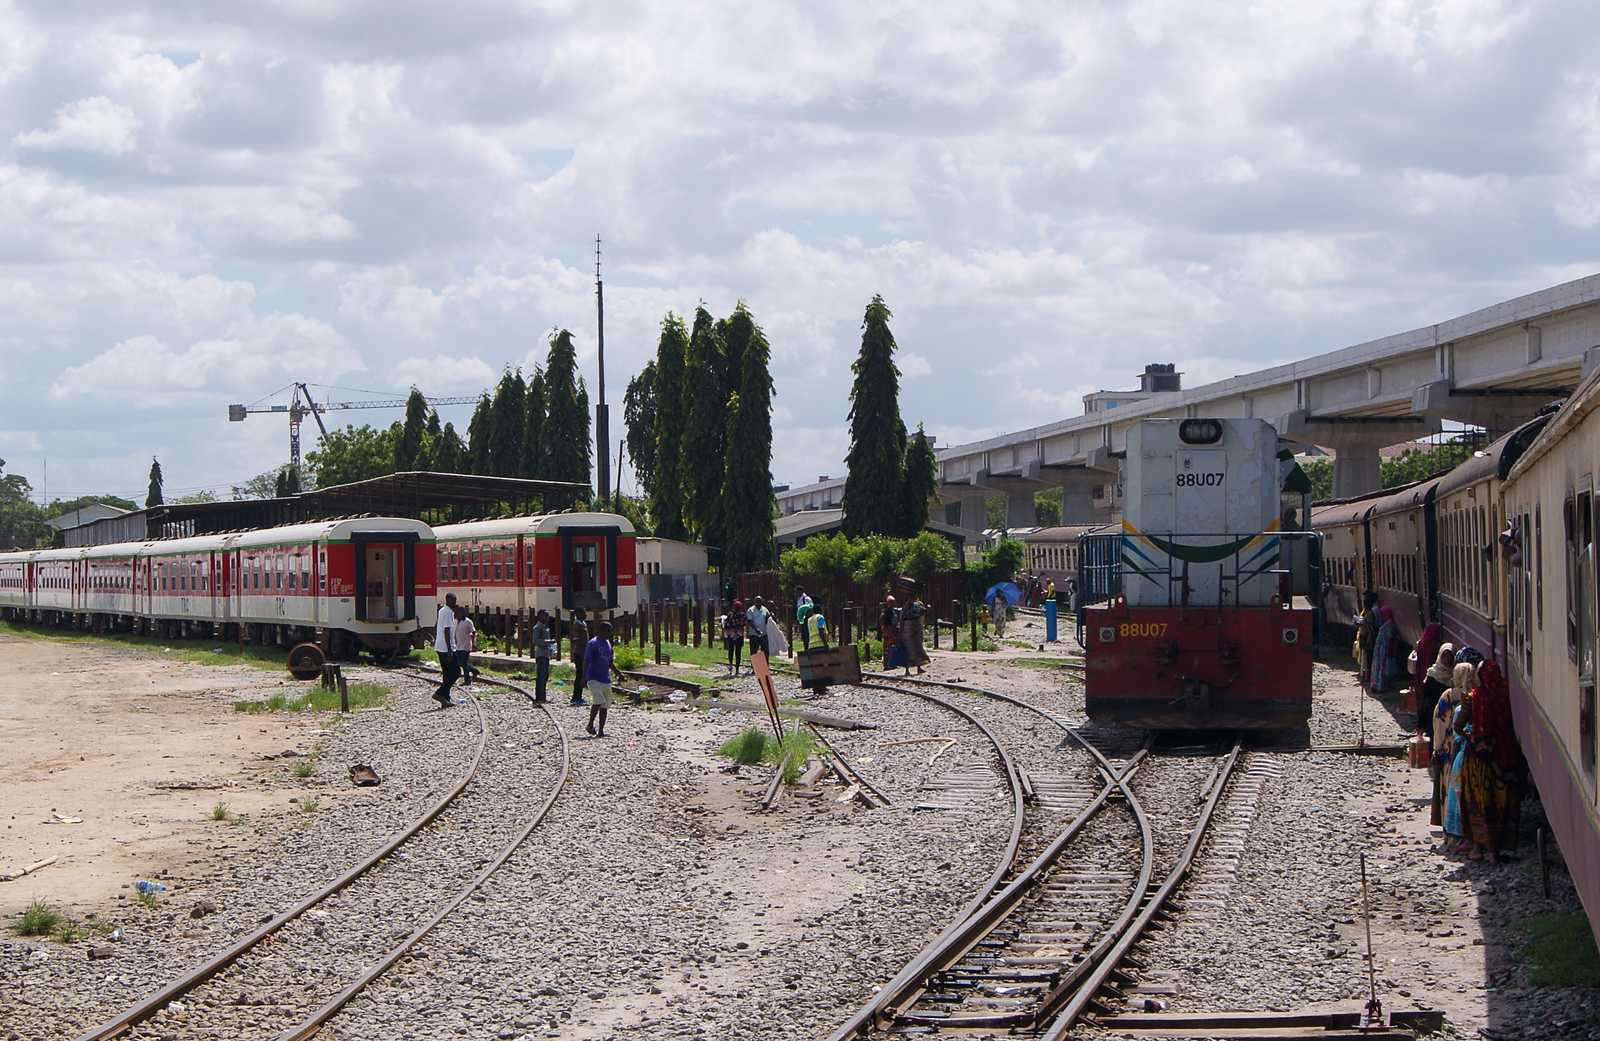 Daressalam Kamata Station im Oktober 2019: Am zur Abfahrt bereitgestellten Zug rangiert die Lok 88U07 vorbei. Links stehen moderne Reisezugwagen aus China, rechts oben ist die normalspurige Hochbahn zu sehen.